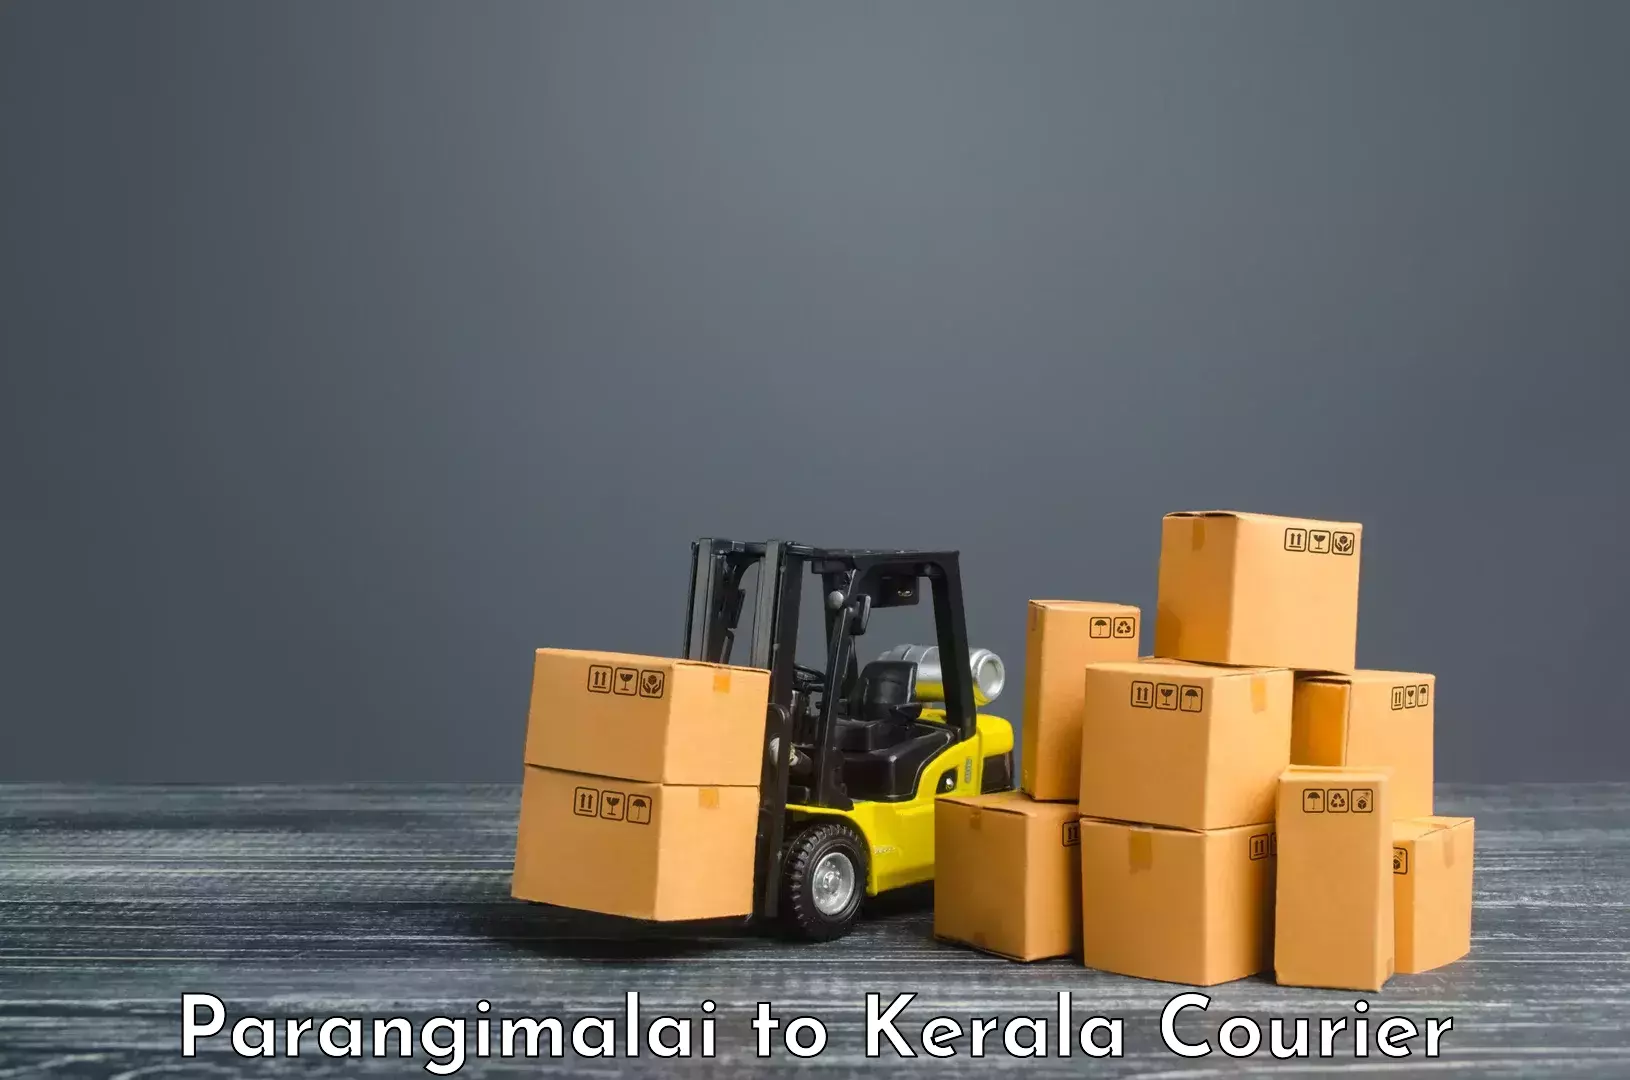 Urban courier service Parangimalai to Mahe